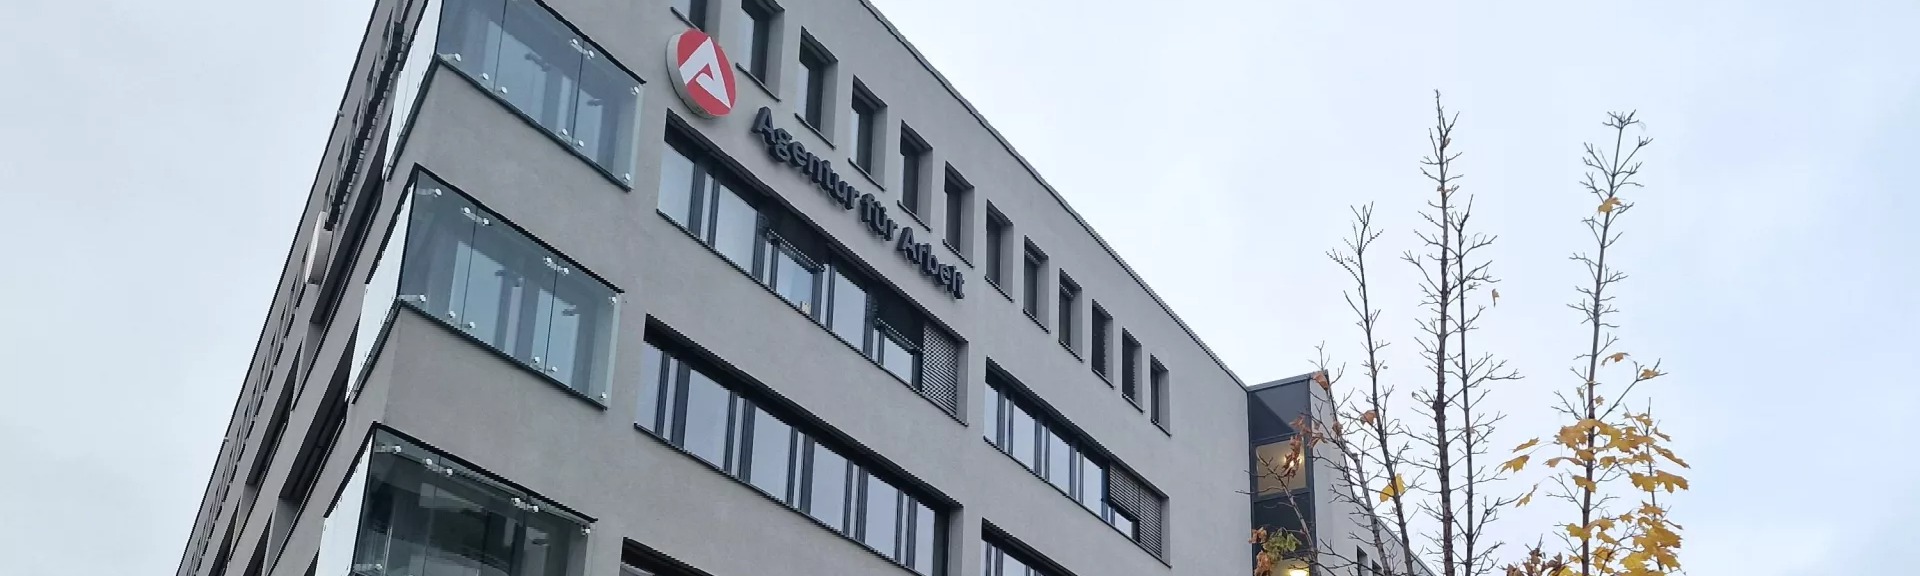 Gebäude der Agentur für Arbeit Stuttgart